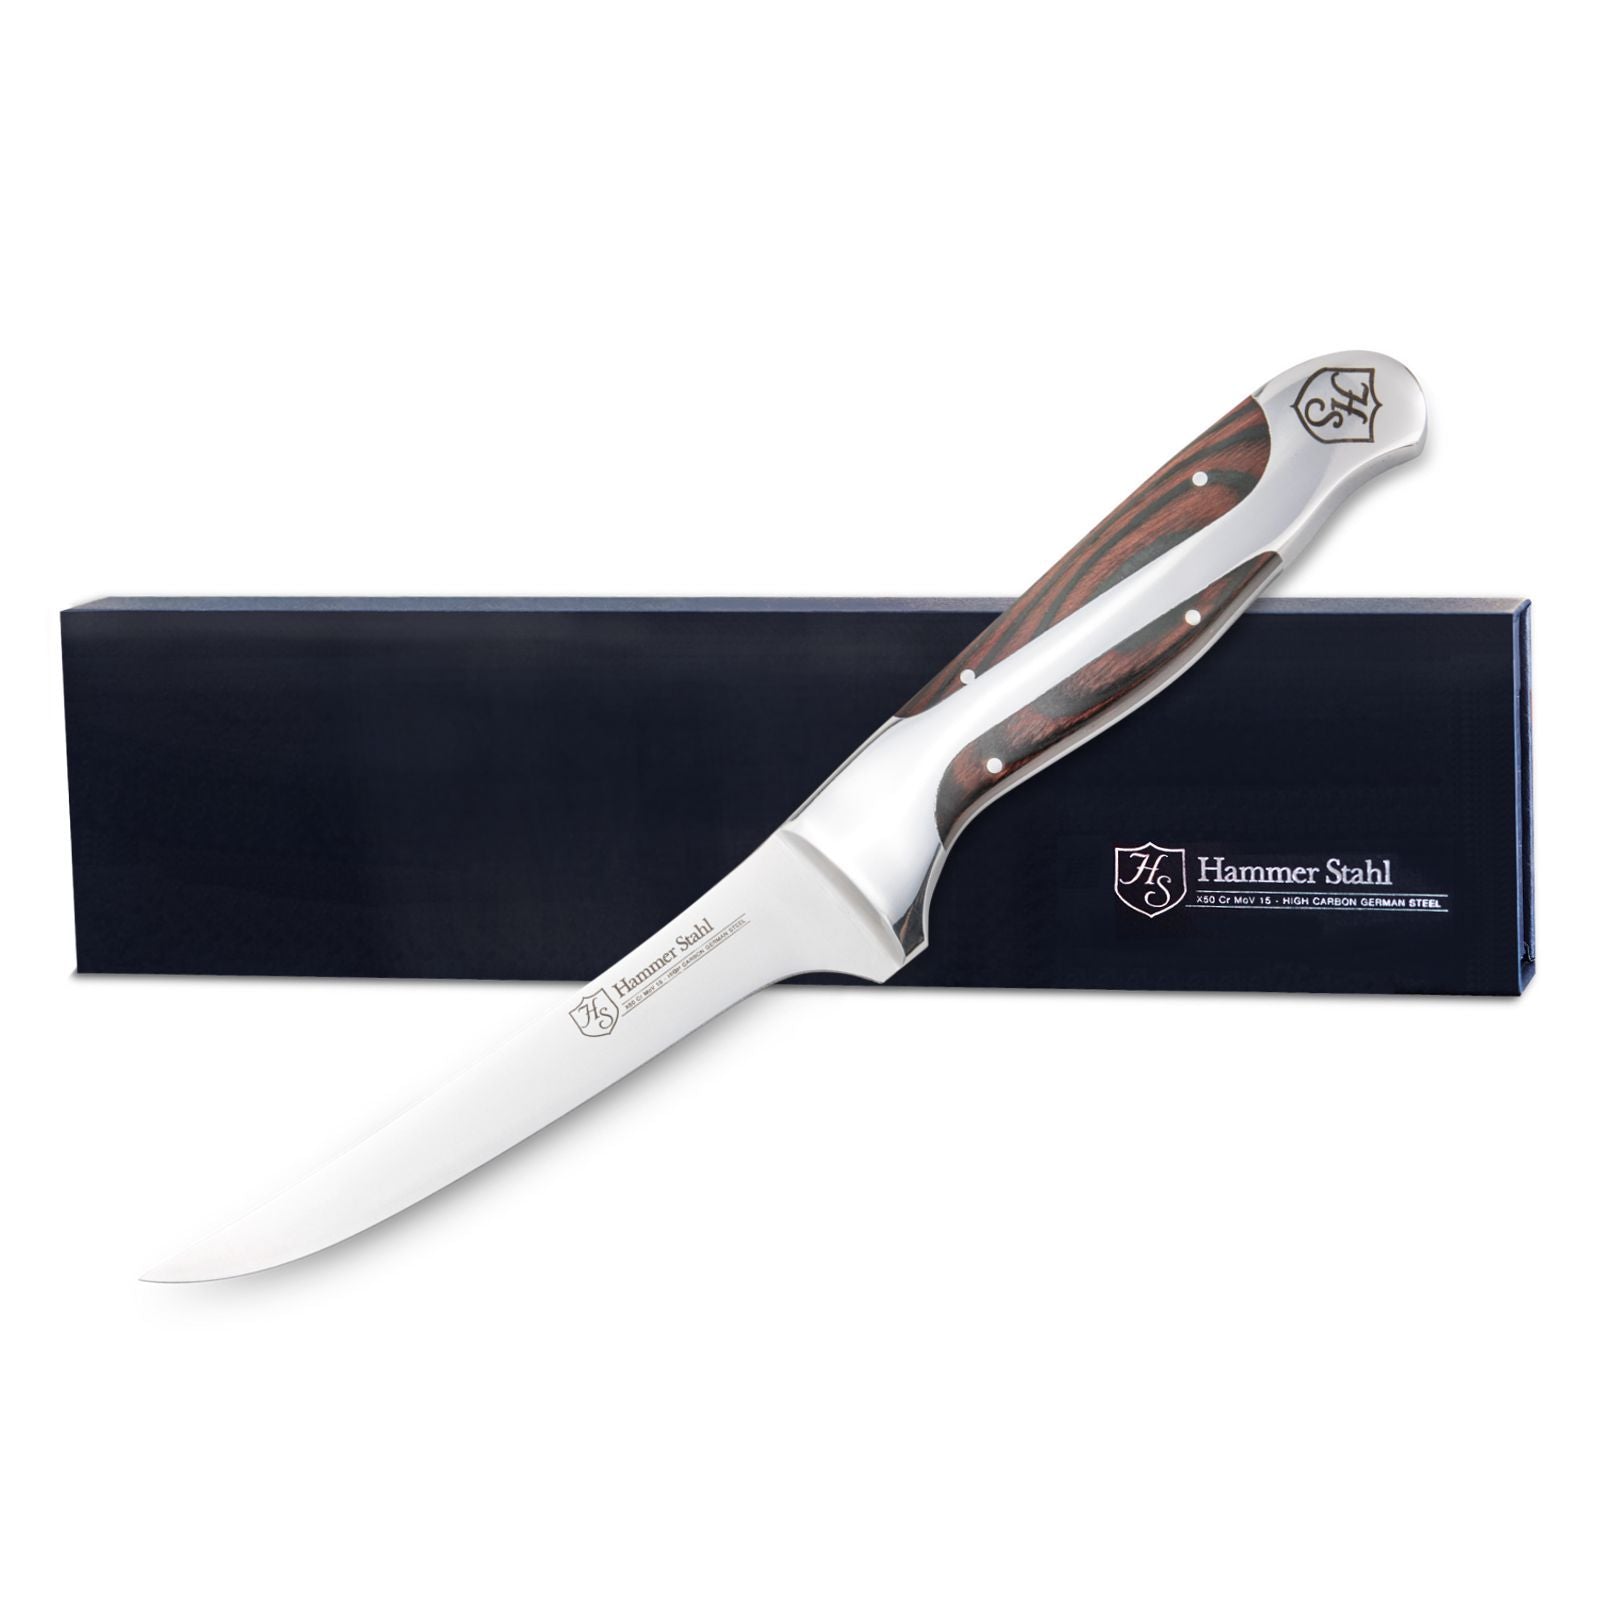 Hammer Stahl 7-Inch Fillet Knife | German Forged High Carbon Steel Fishing  Knife | Flexible Kitchen Knife For Filleting, Boning, Trimming & Slicing 